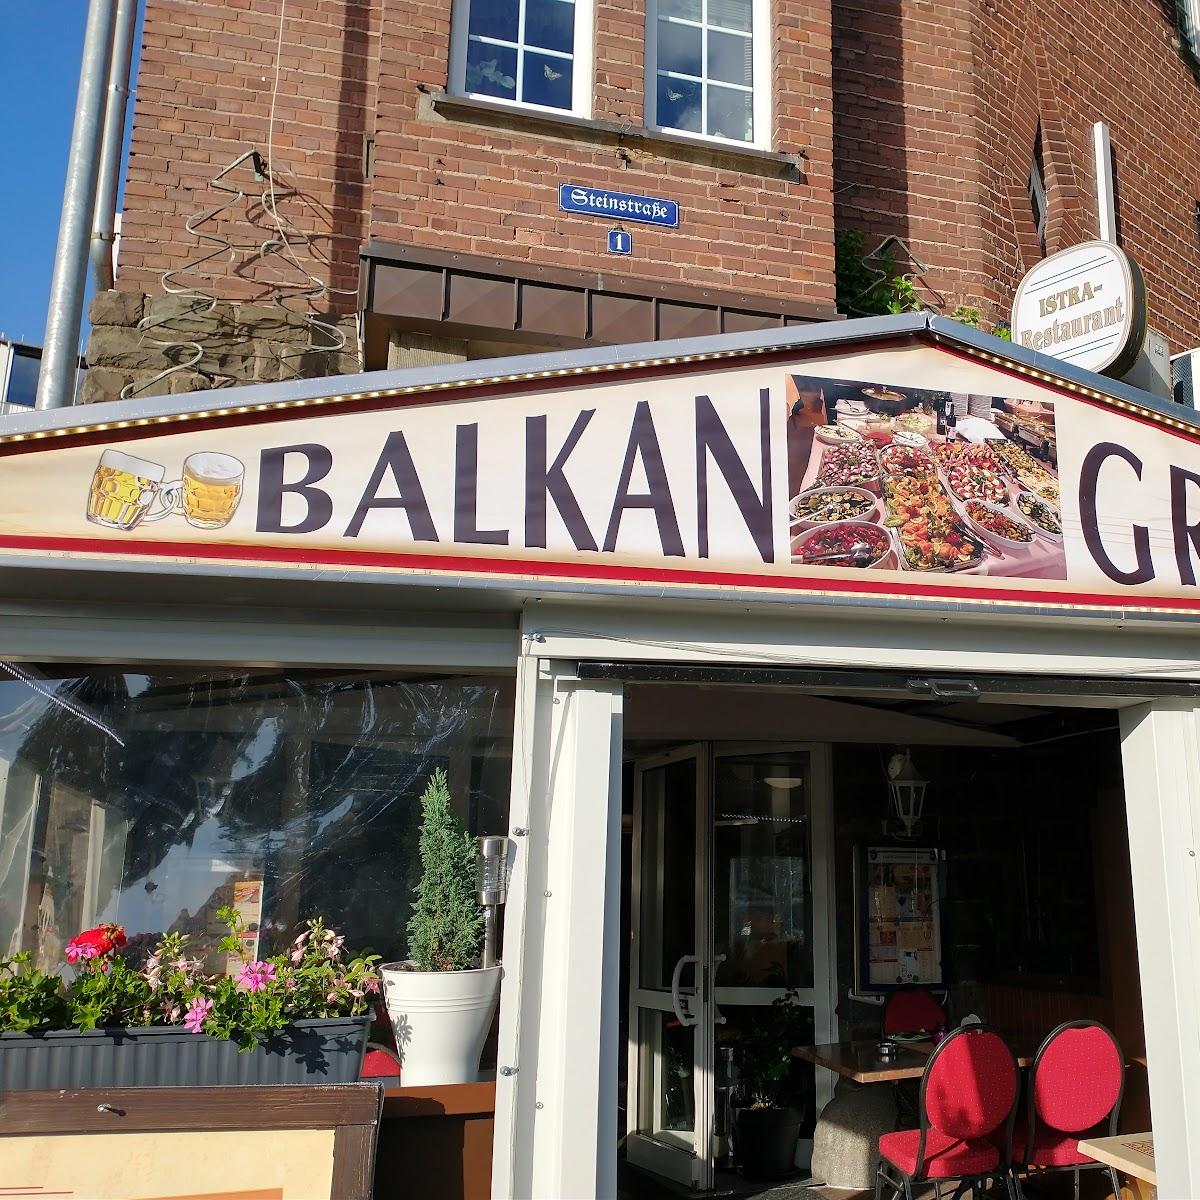 Restaurant "Balkan Restaurant Istra" in Bergisch Gladbach